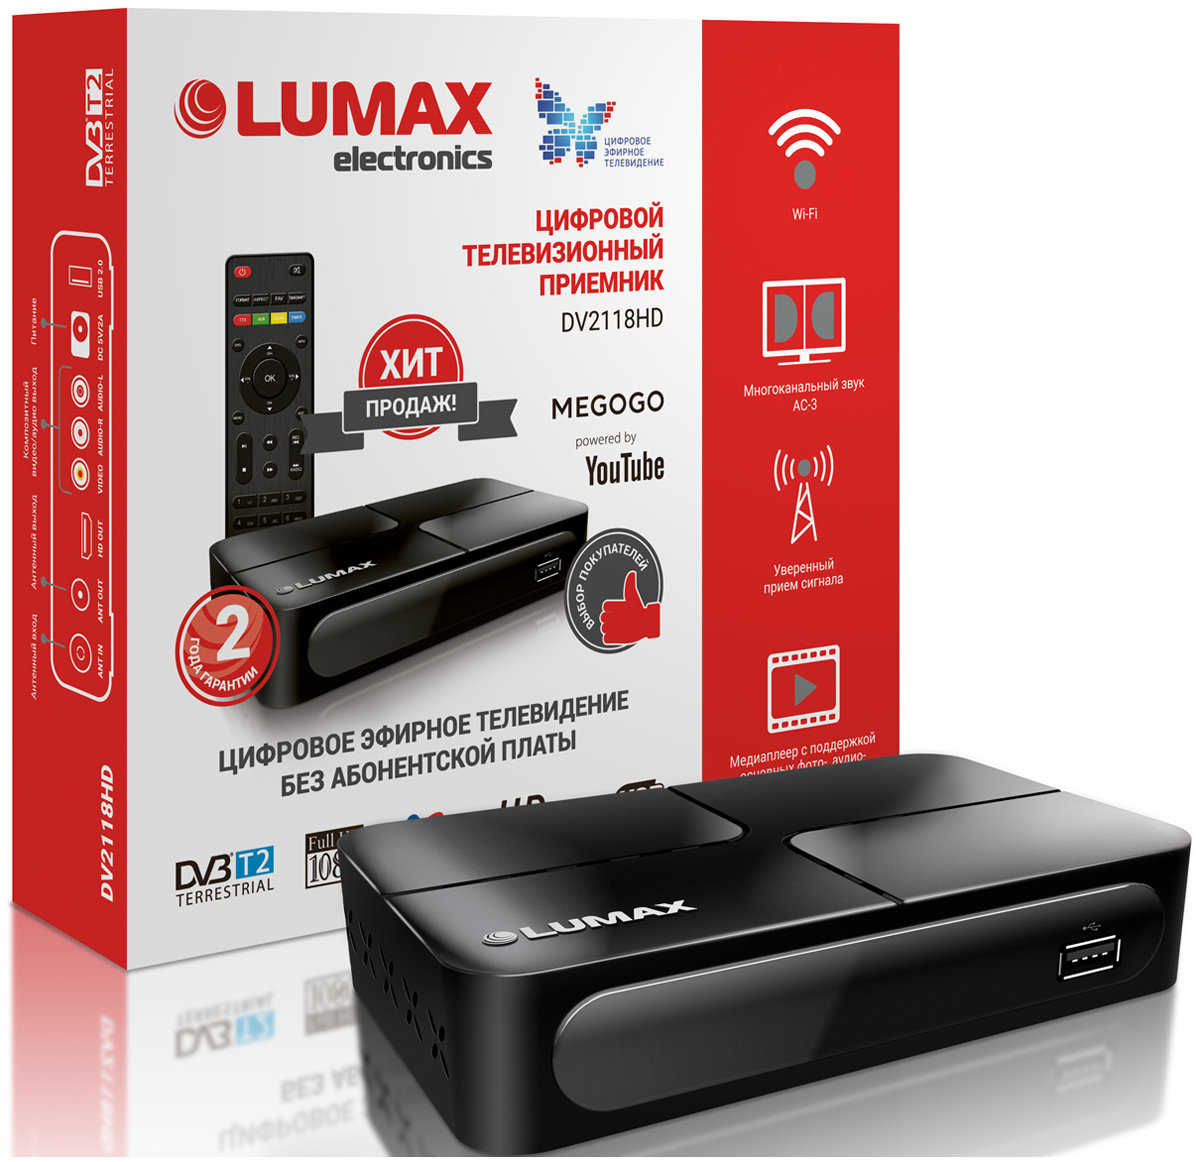 Цифровой телевизионный ресивер Lumax DV 2118 HD цифровой телевизионный ресивер lumax dv 2118 hd